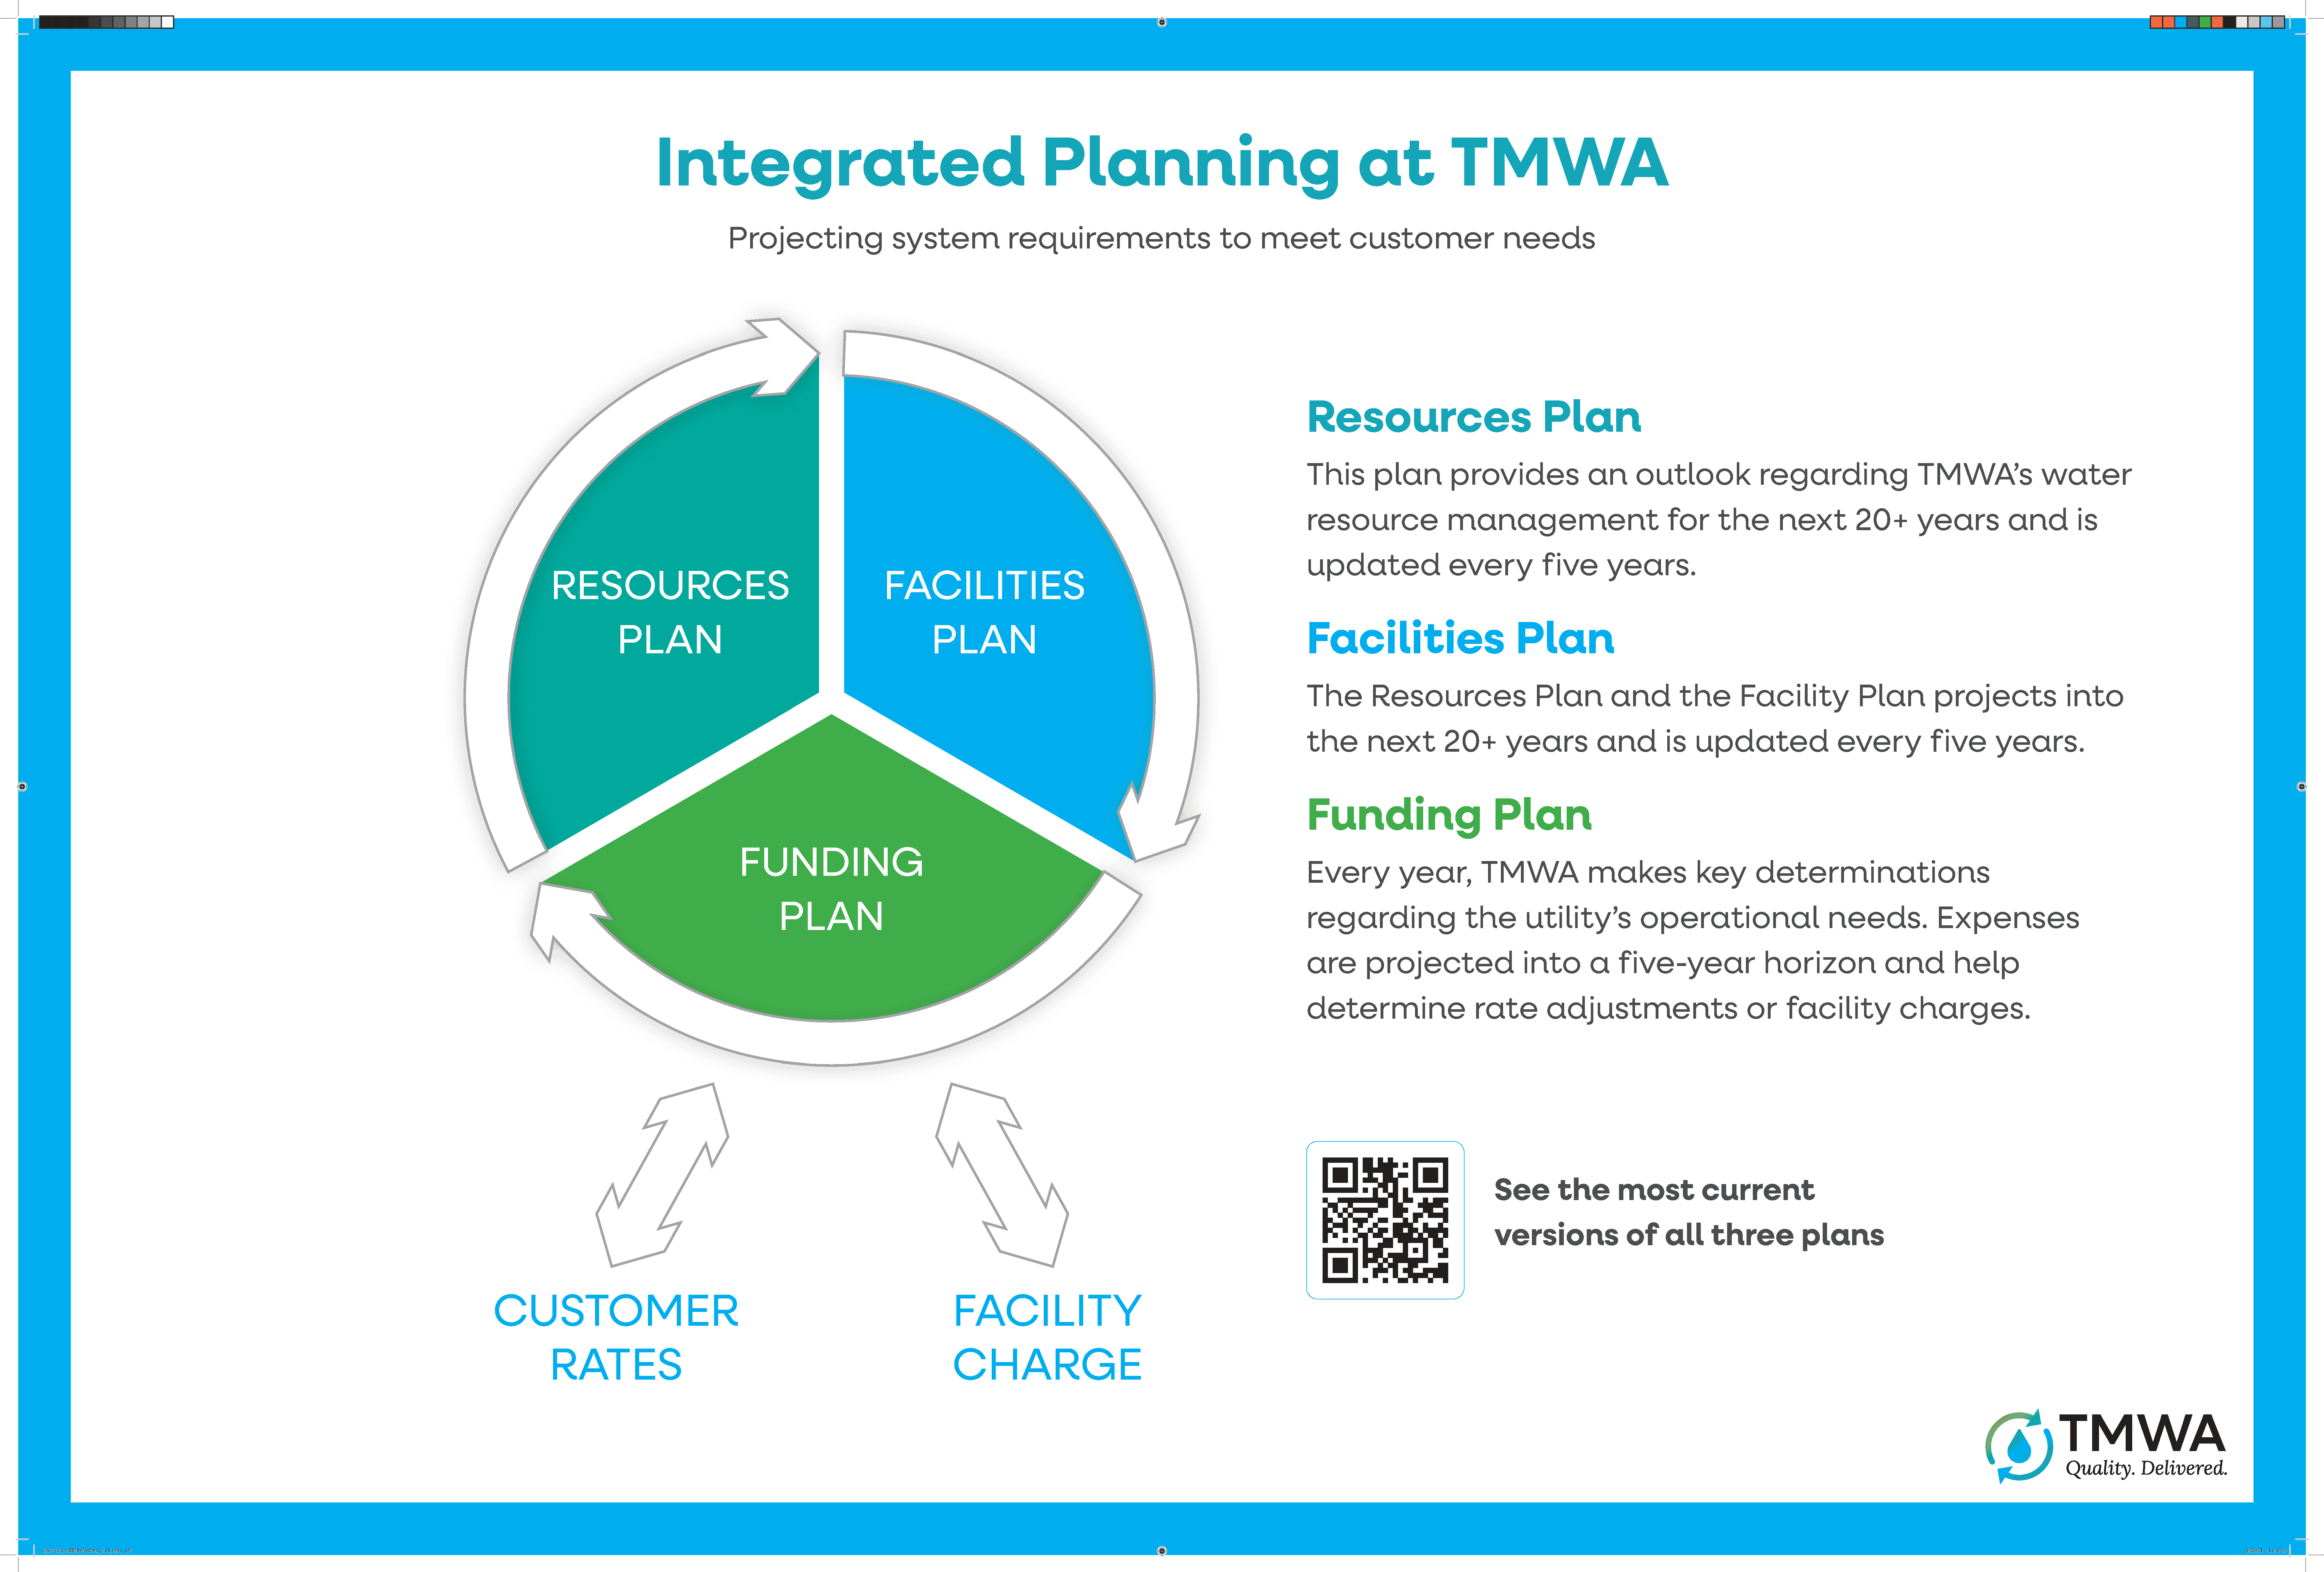 TMWA Planning Cycle (Water Resources Plan, Facilities Plan, Funding Plan)